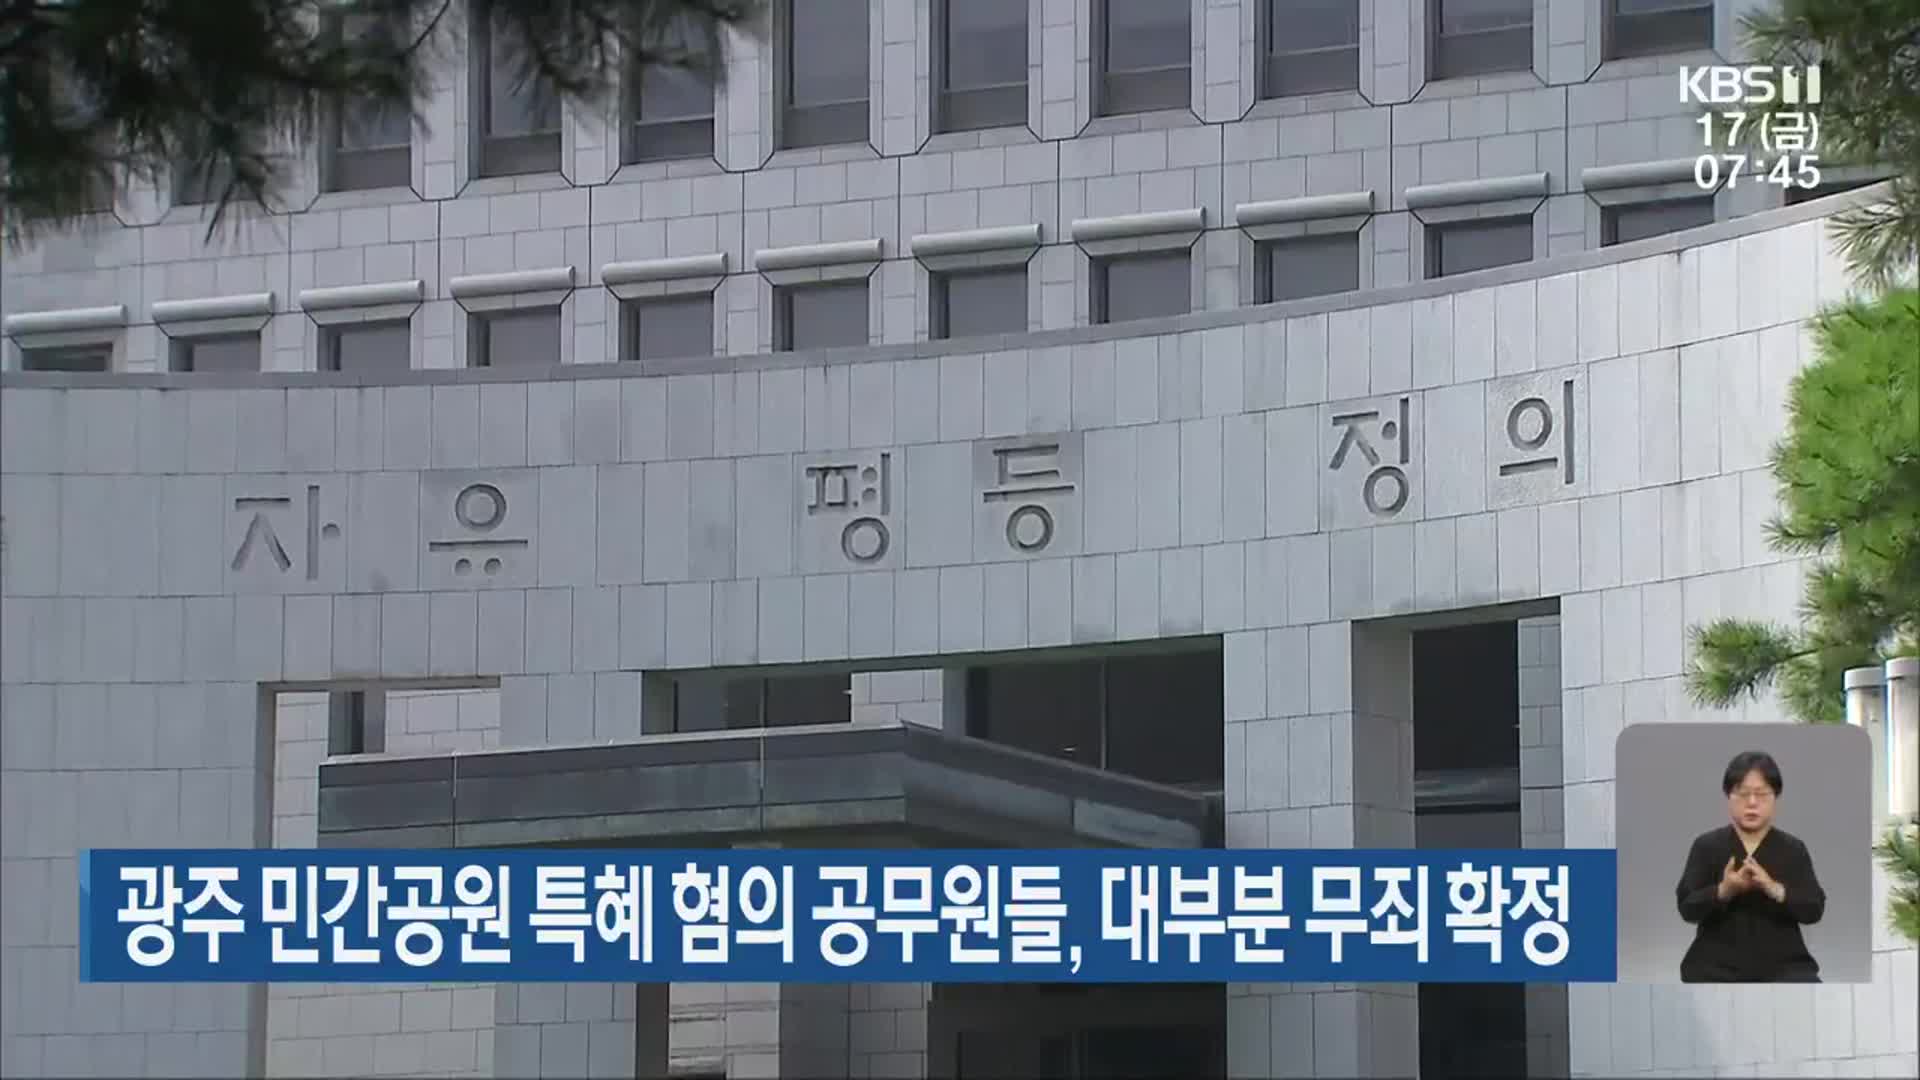 광주 민간공원 특혜 혐의 공무원들, 대부분 무죄 확정